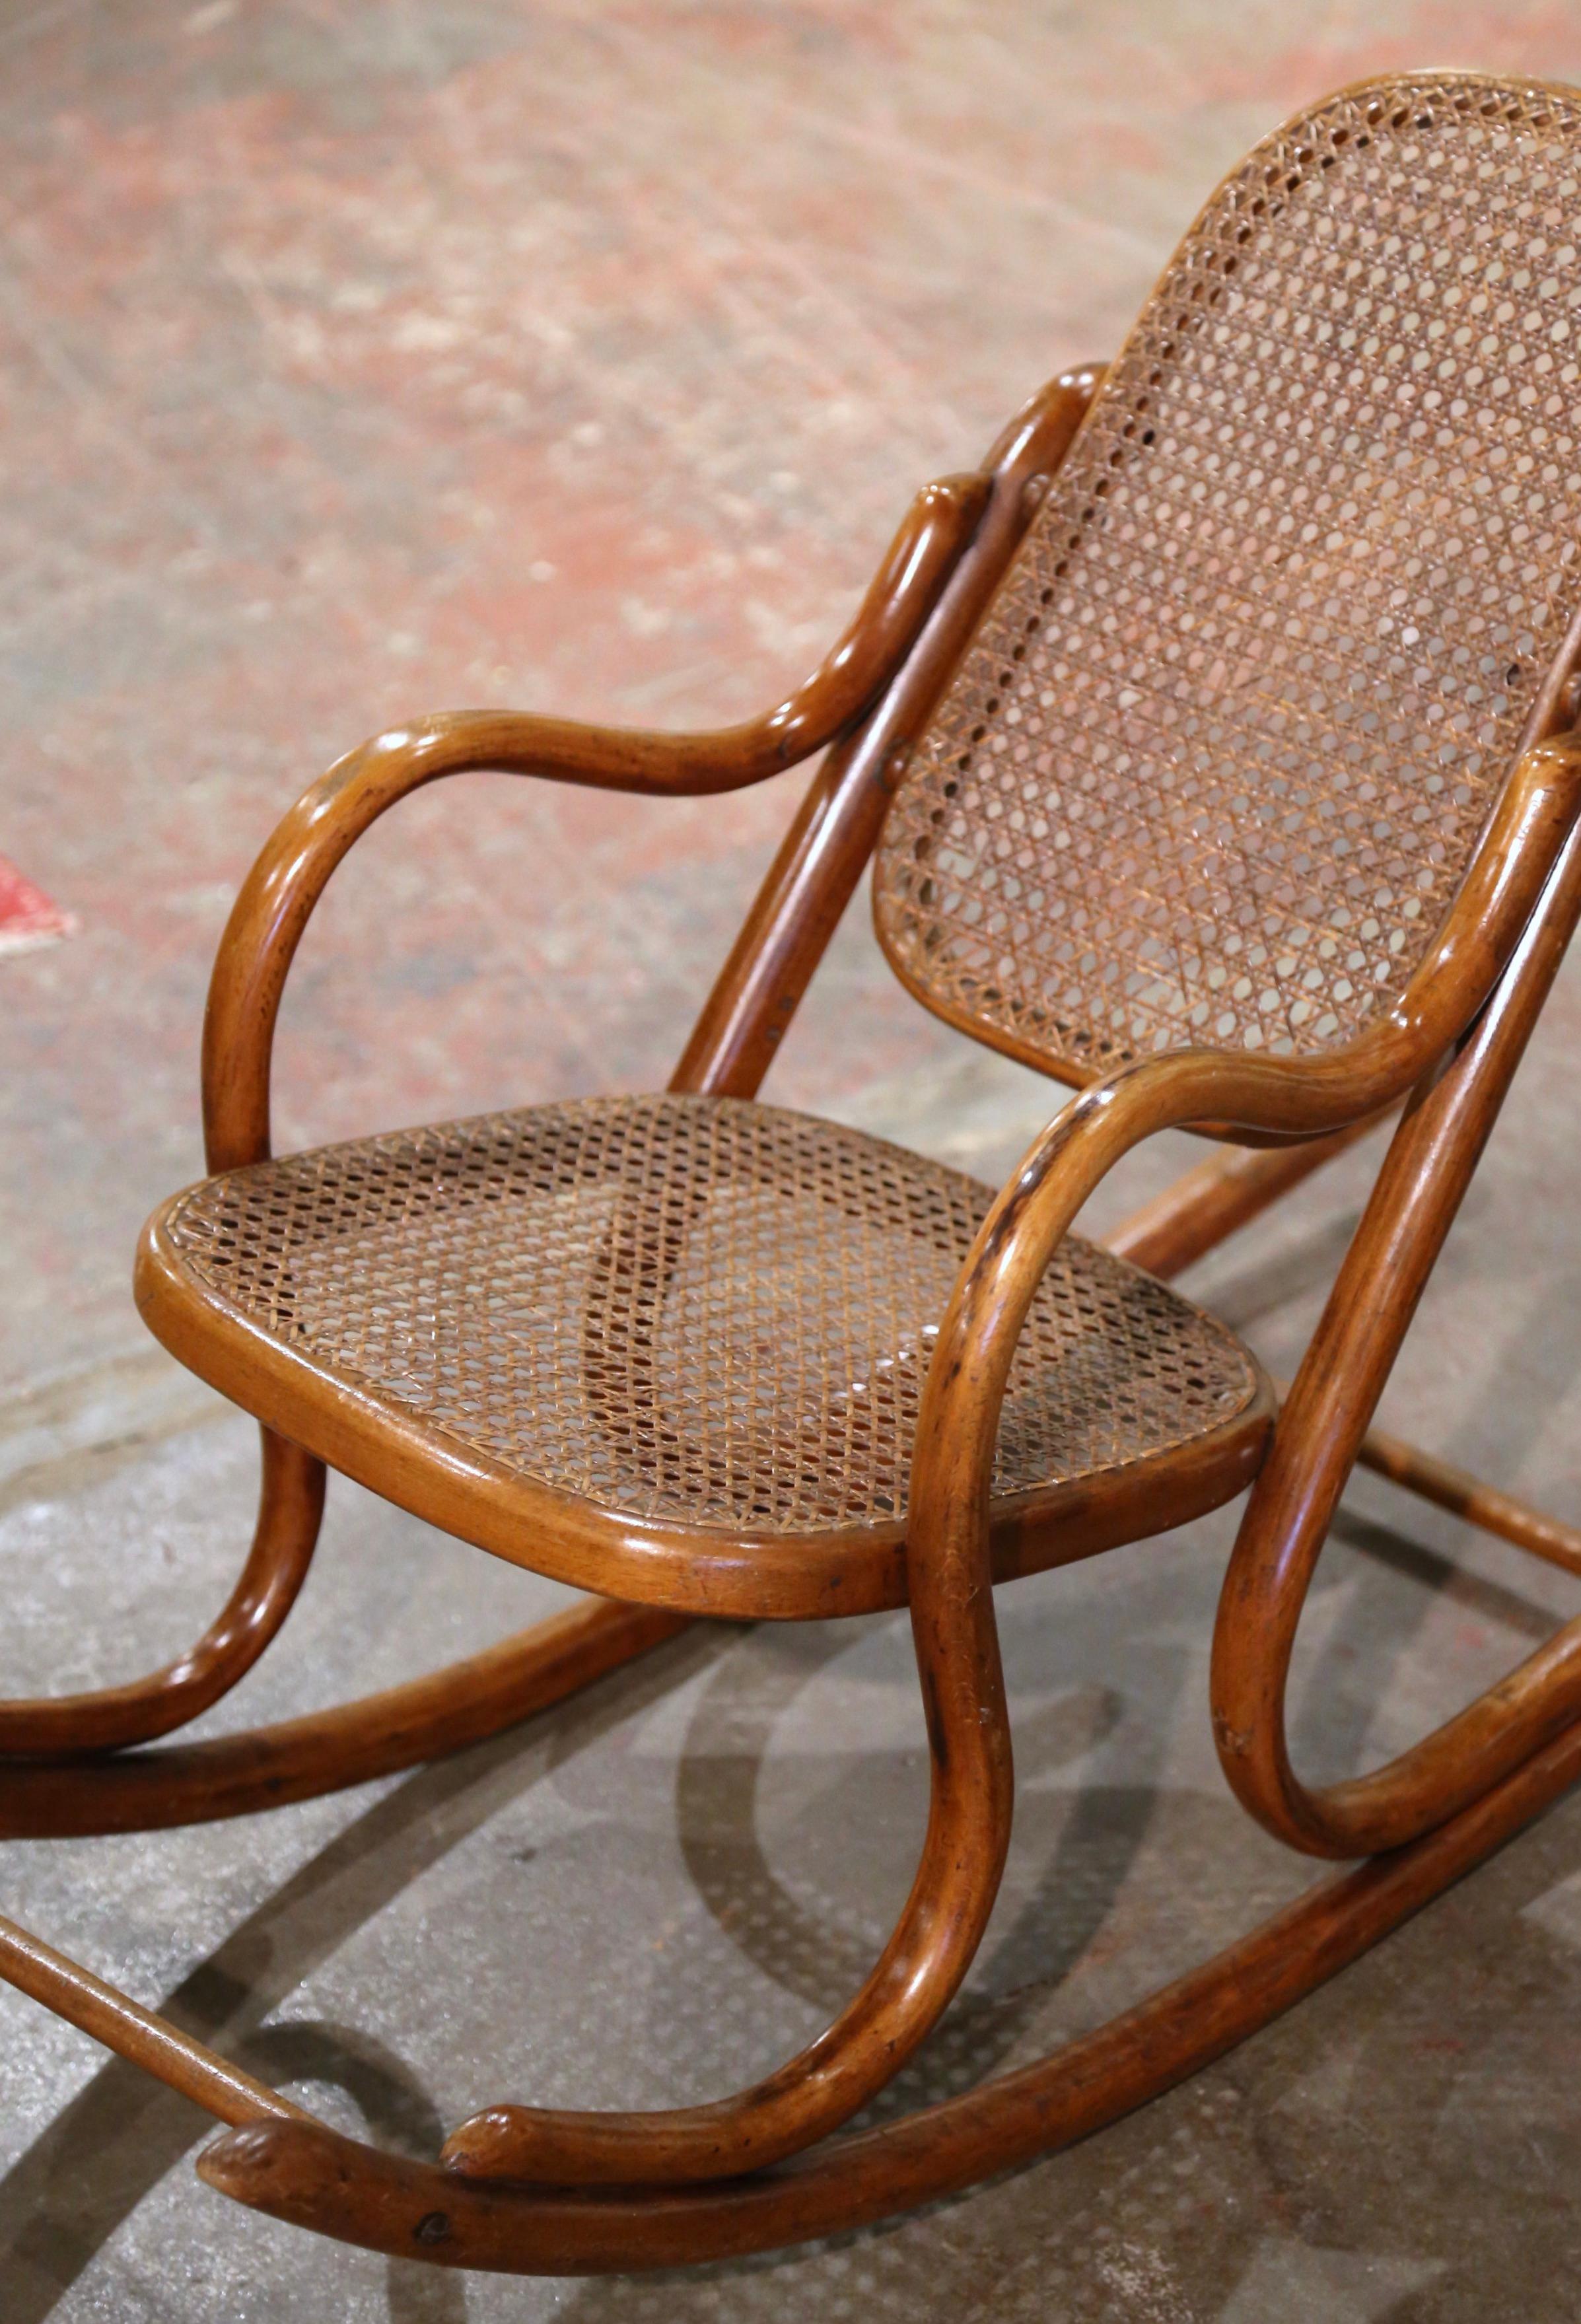 Décorez une chambre d'enfant avec ce fauteuil à bascule Art déco antique pour enfant. Fabriquée en France vers 1920 dans l'affaire de l'ébéniste germano-autrichien Michael Thonet (1796-1871), et construite en bois courbé, la chaise repose sur des